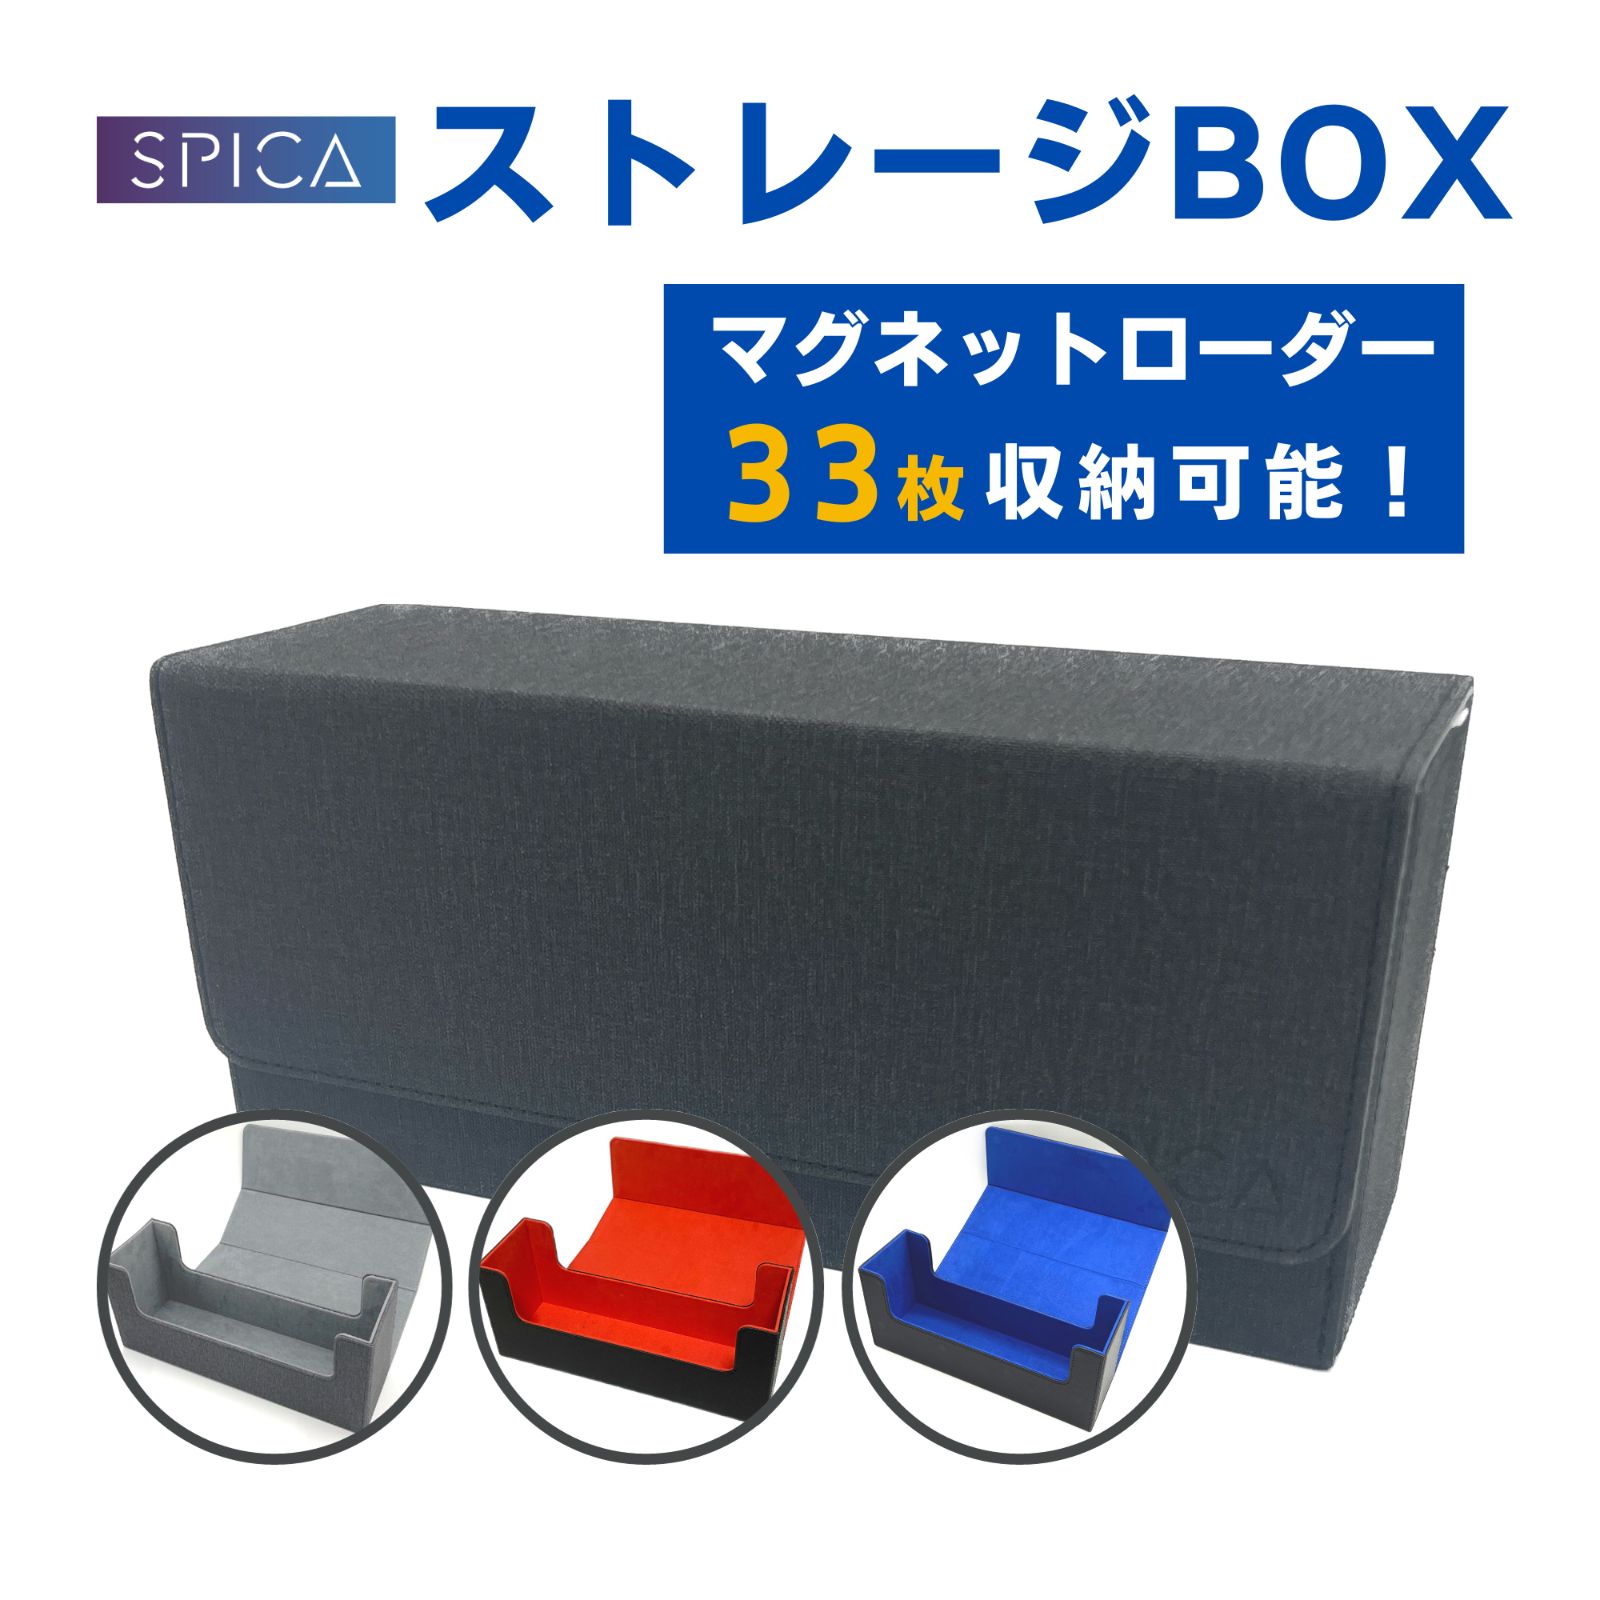 SPICA ストレージボックス 4色から選べる マグネットローダー 収納 box